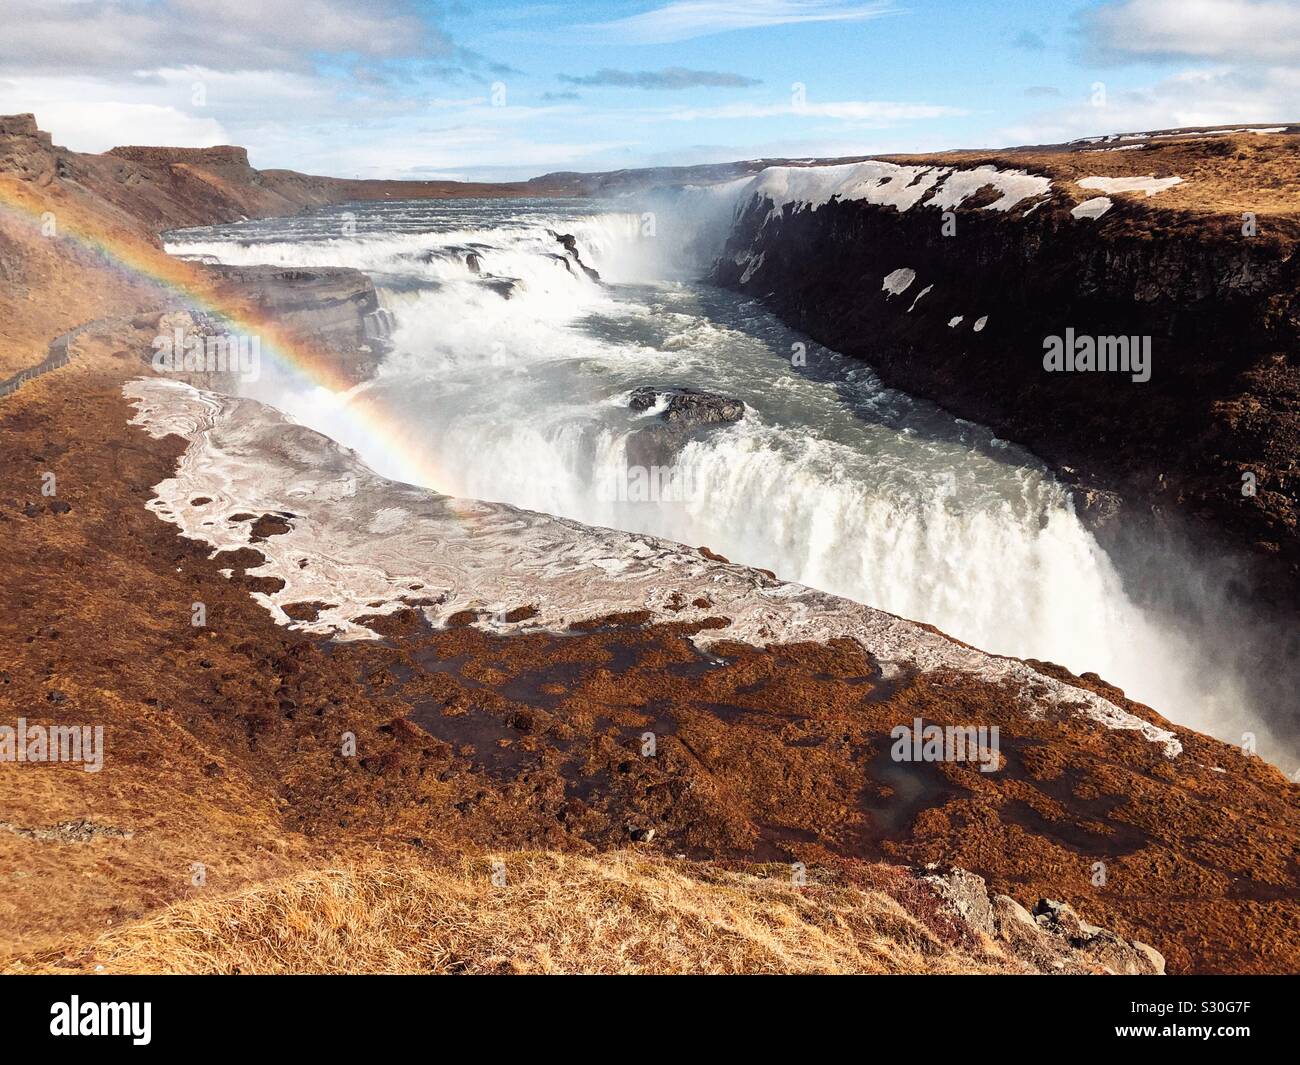 Arcobaleno in Gullfoss cascata situata nel canyon del fiume Hvítá nel sud-ovest dell'Islanda. Foto Stock